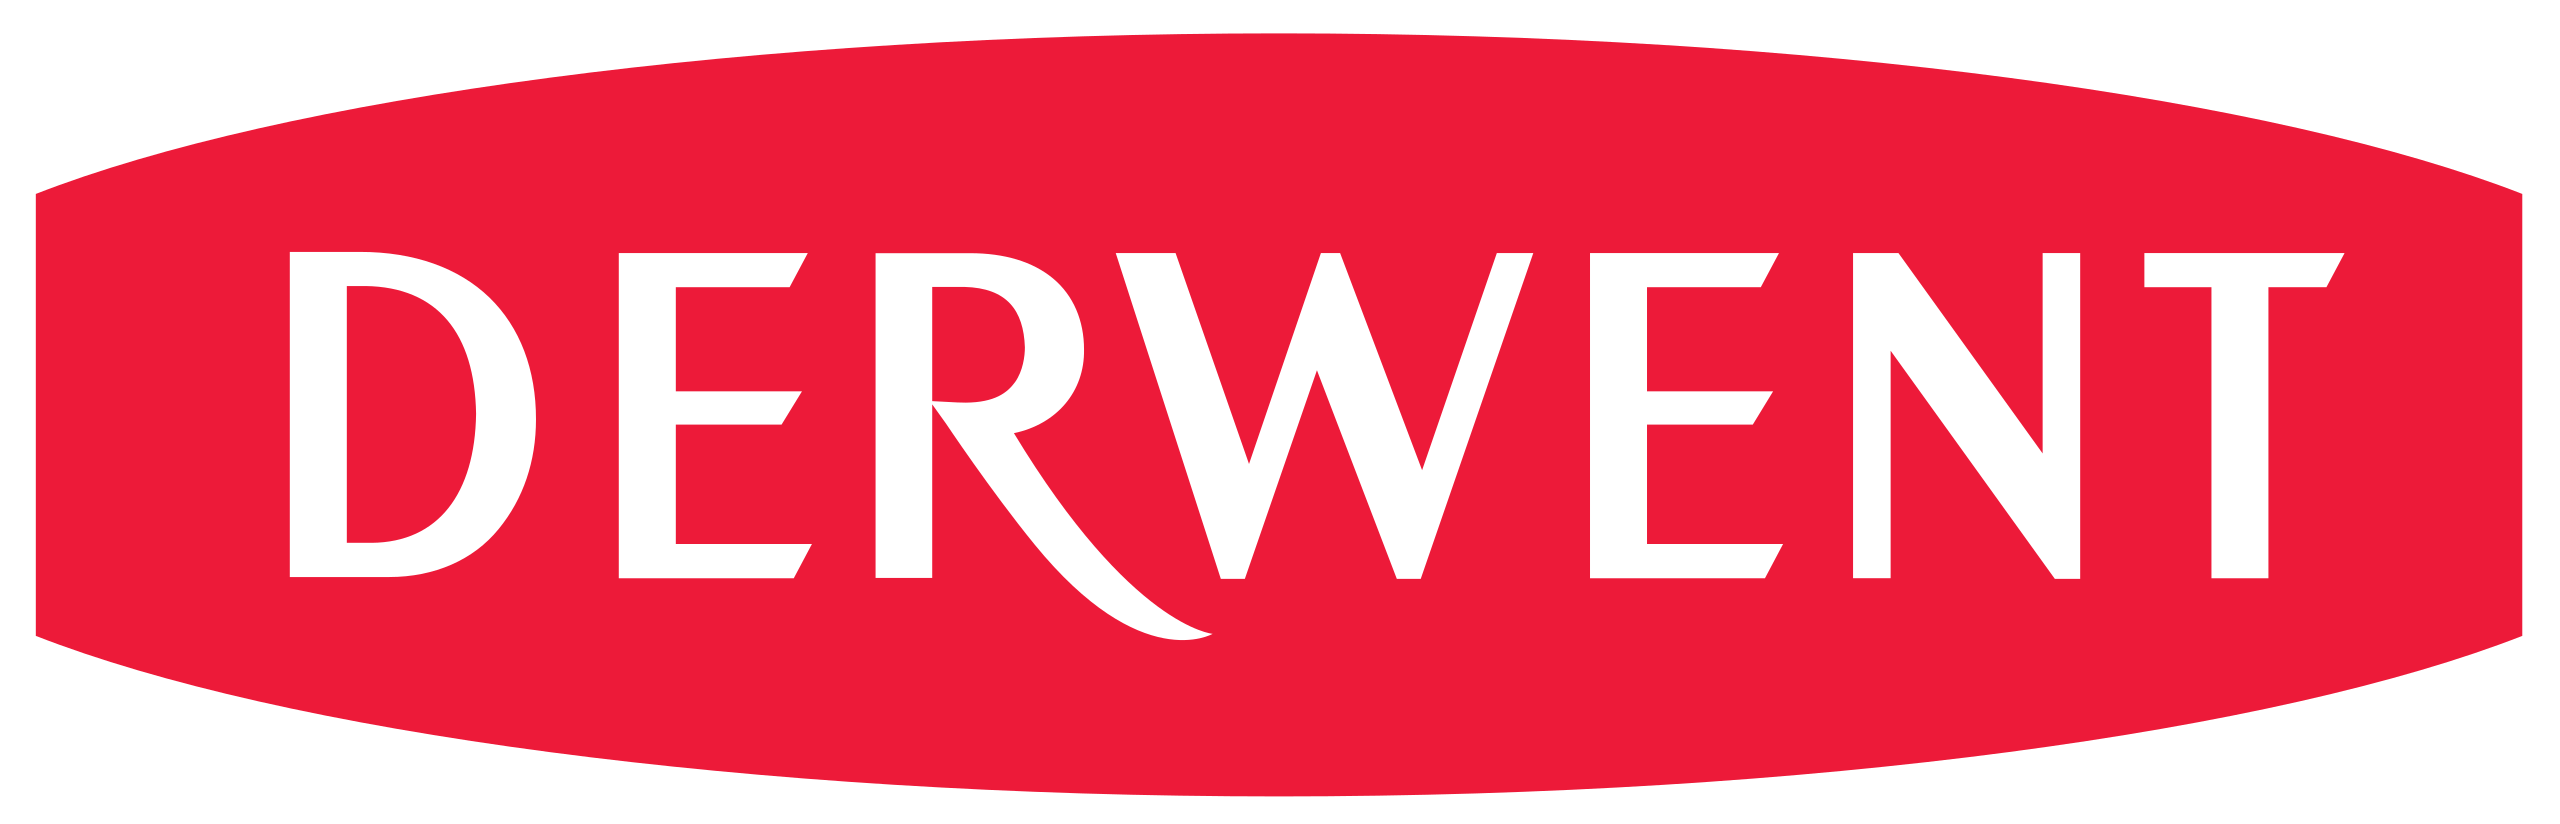 Derwent Brand Logo